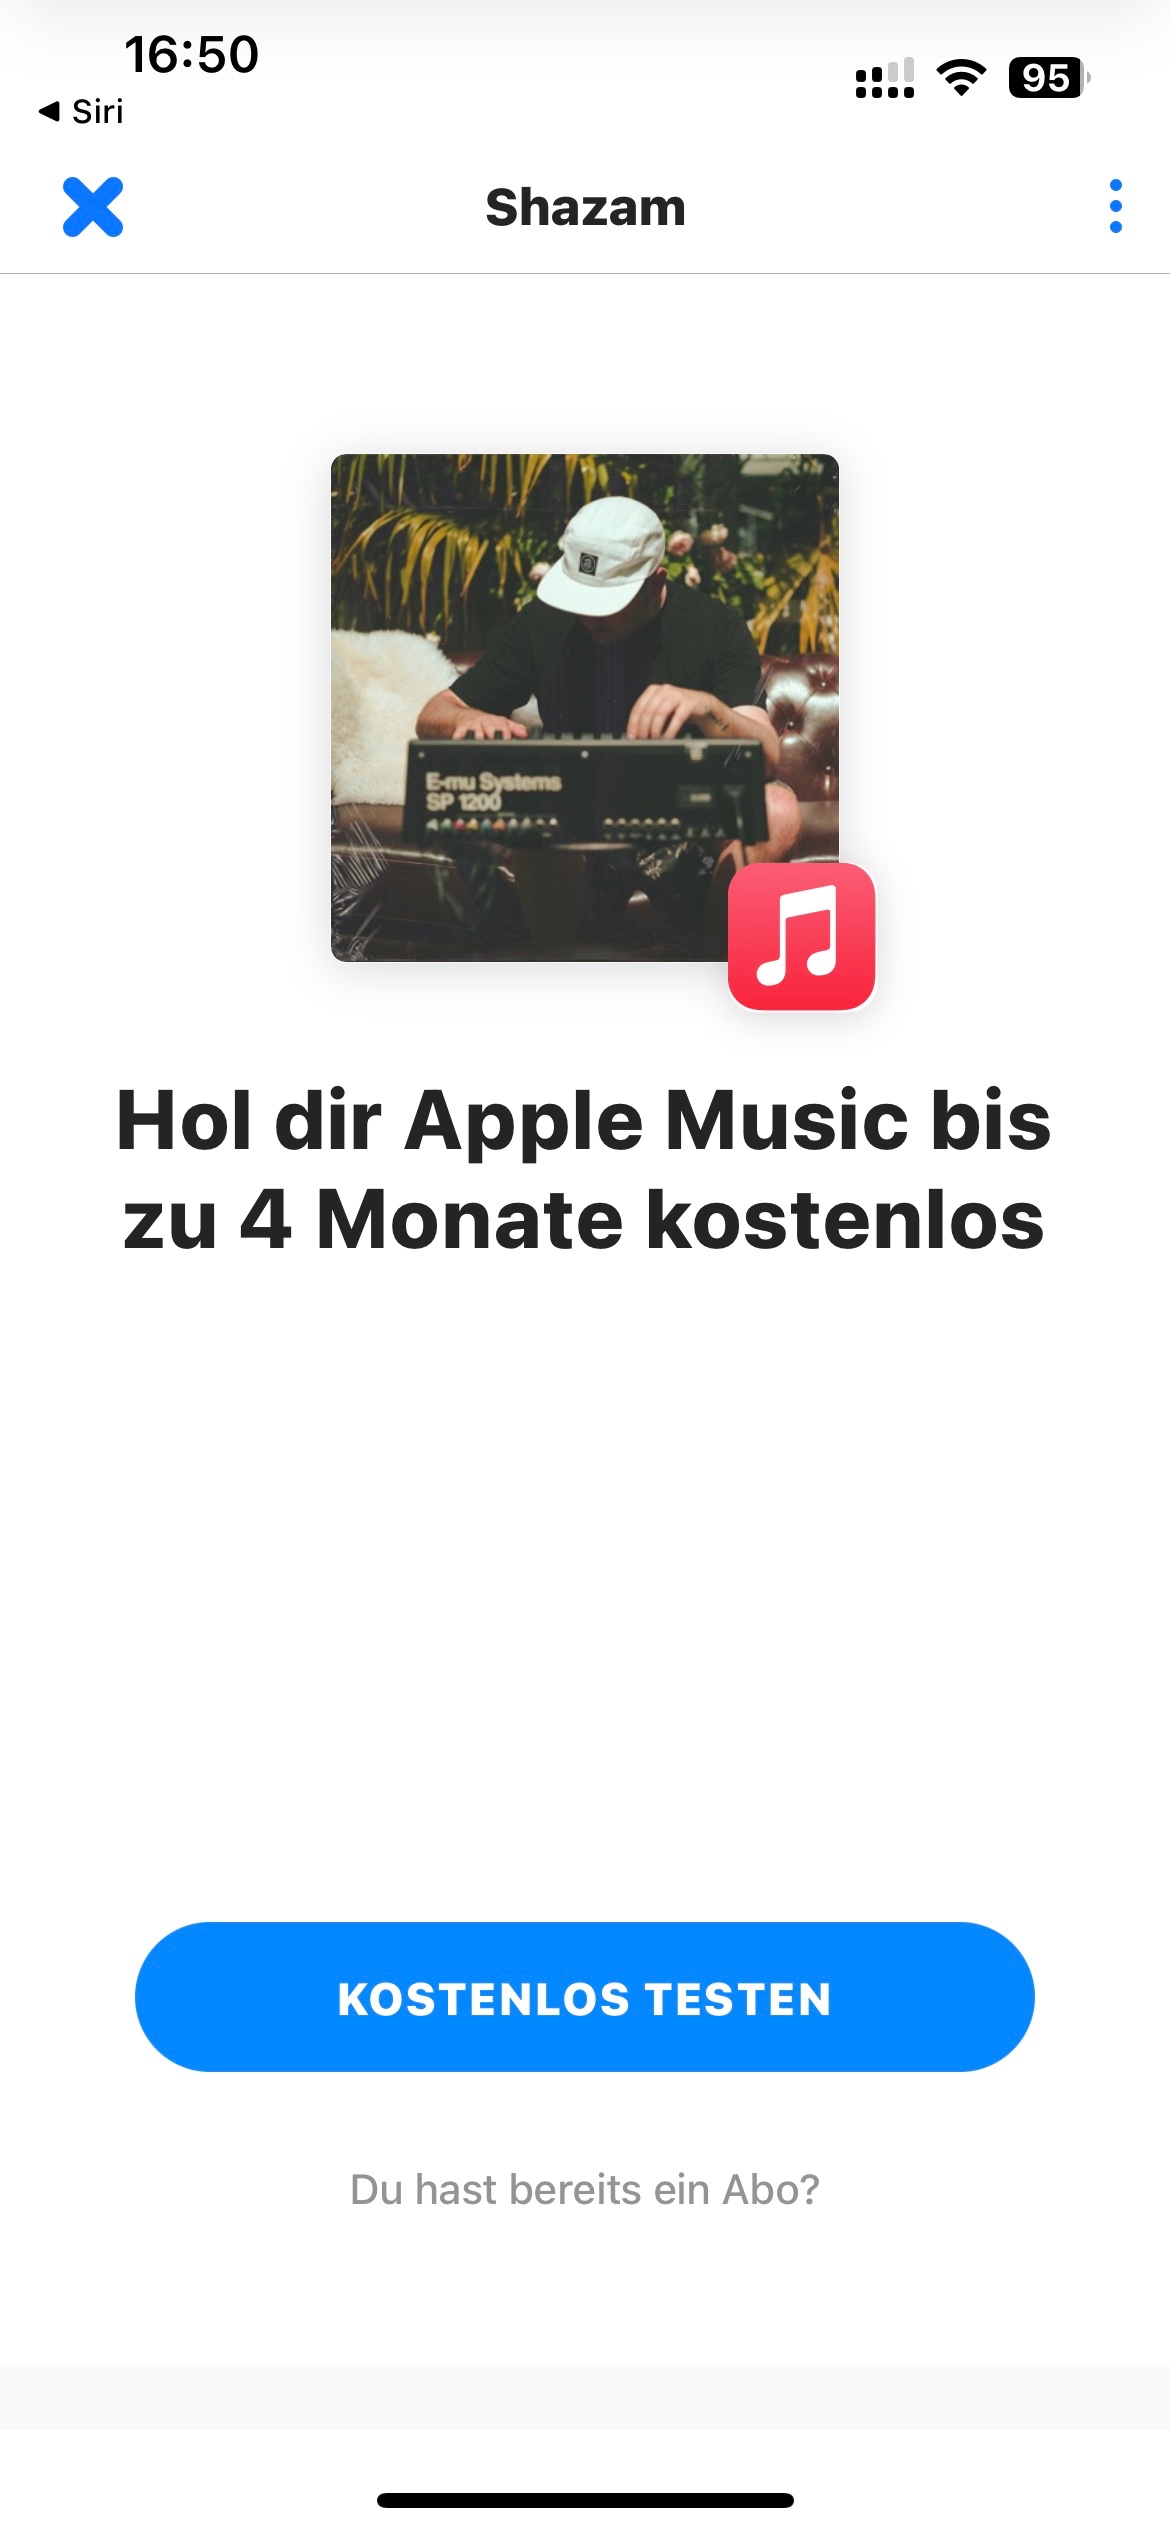 Apple Music] via Shazam Homepage (nicht die App) bis zu 3